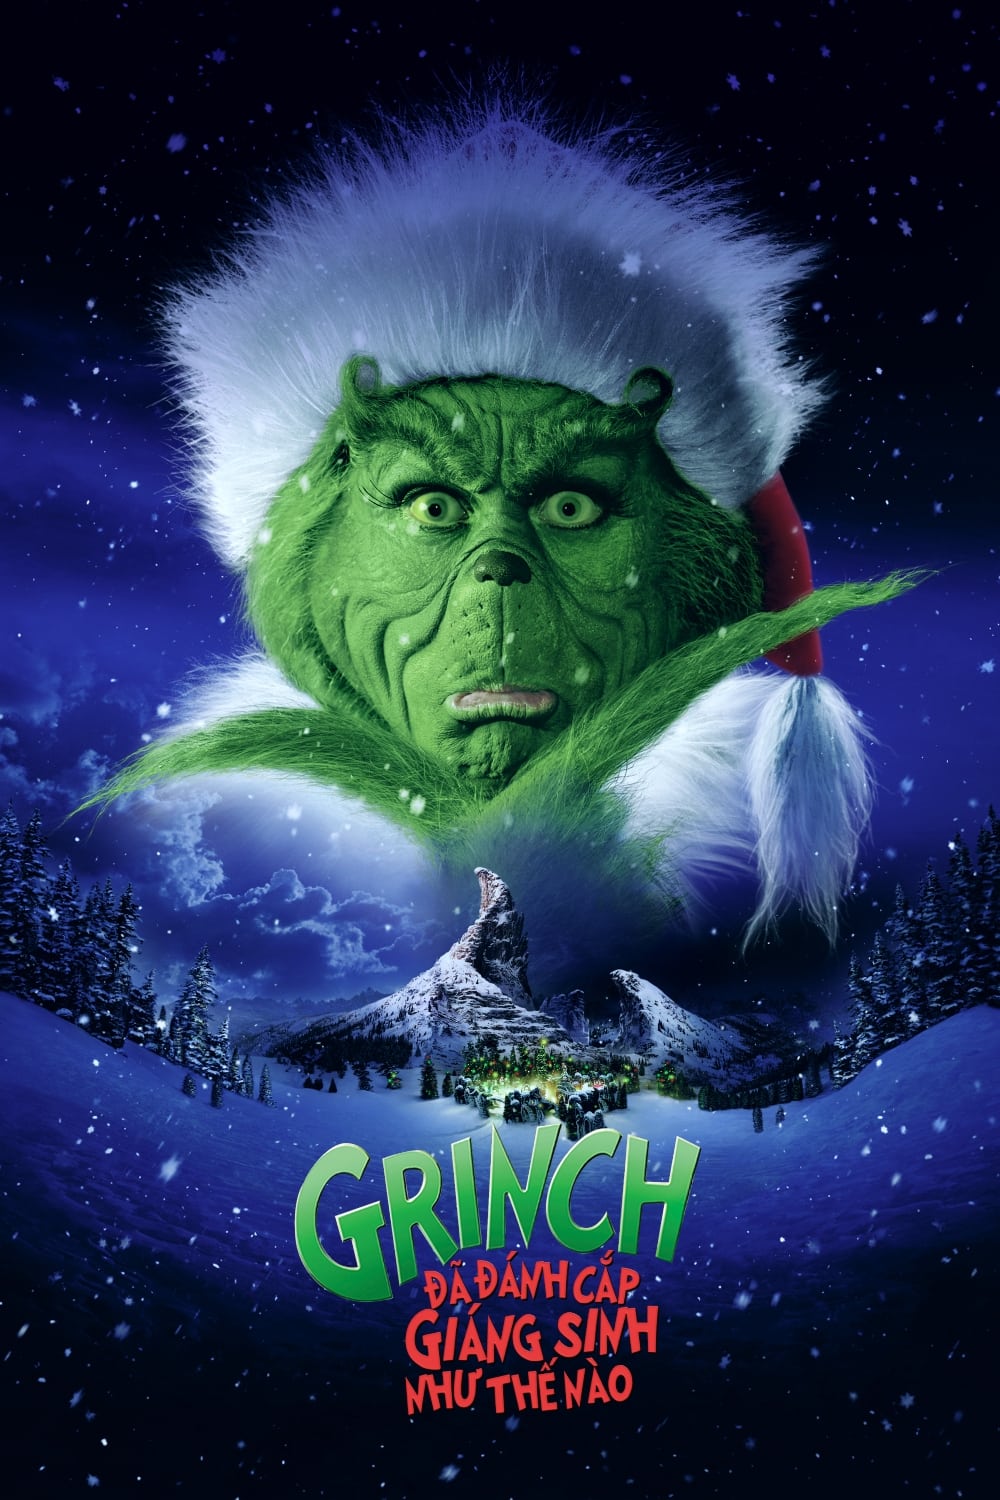 Grinch Đã Đánh Cắp Giáng Sinh Như Thế Nào - How the Grinch Stole Christmas (2000)